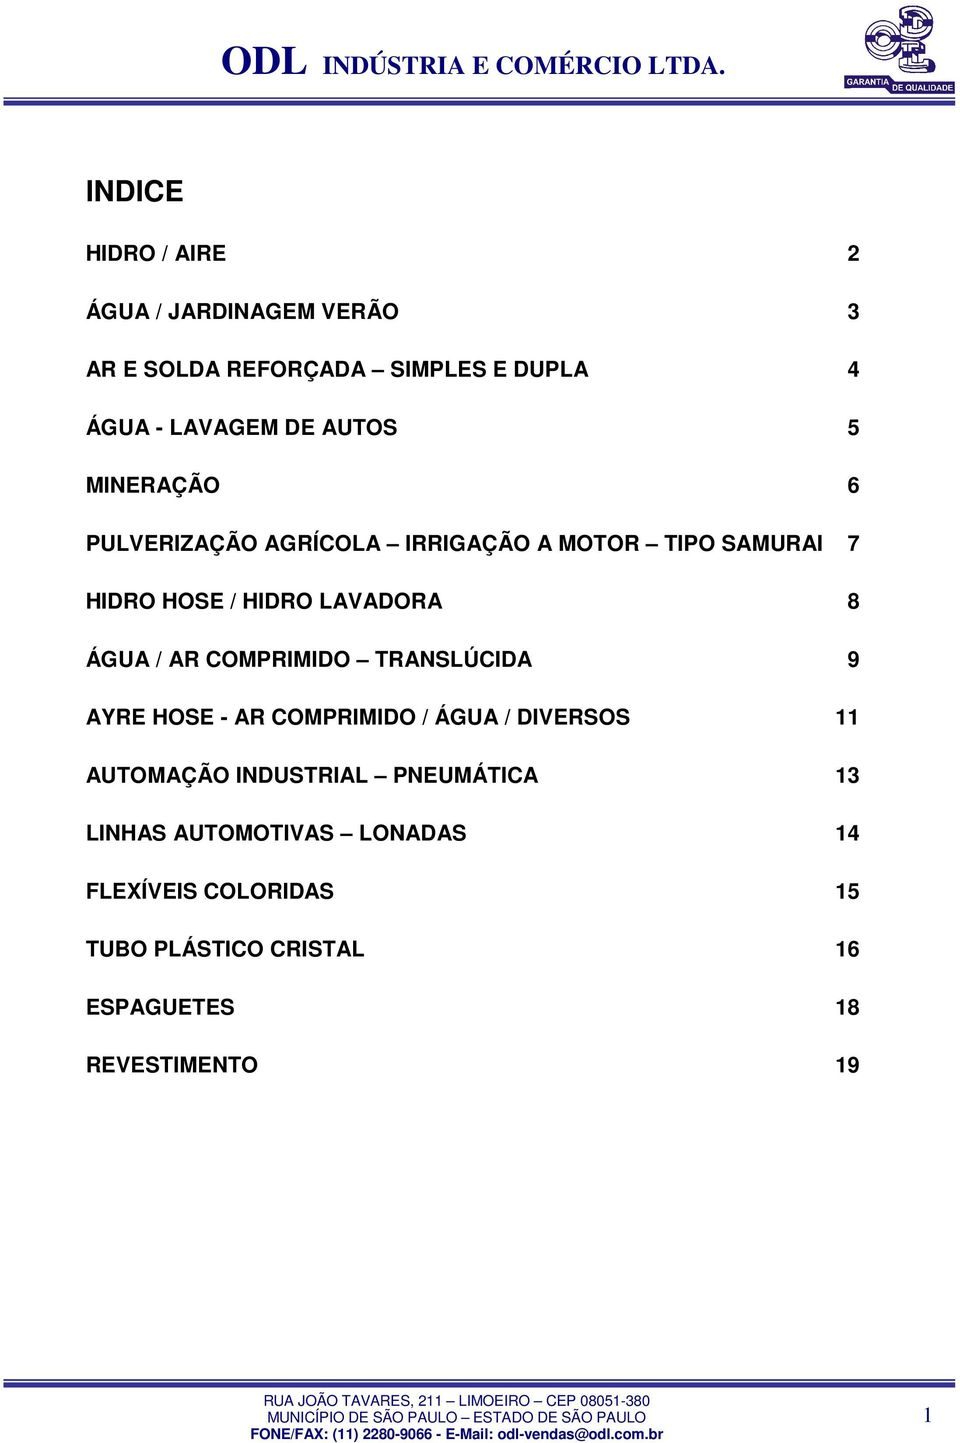 ÁGUA / AR COMPRIMIDO TRANSLÚCIDA 9 AYRE HOSE - AR COMPRIMIDO / ÁGUA / DIVERSOS 11 AUTOMAÇÃO INDUSTRIAL